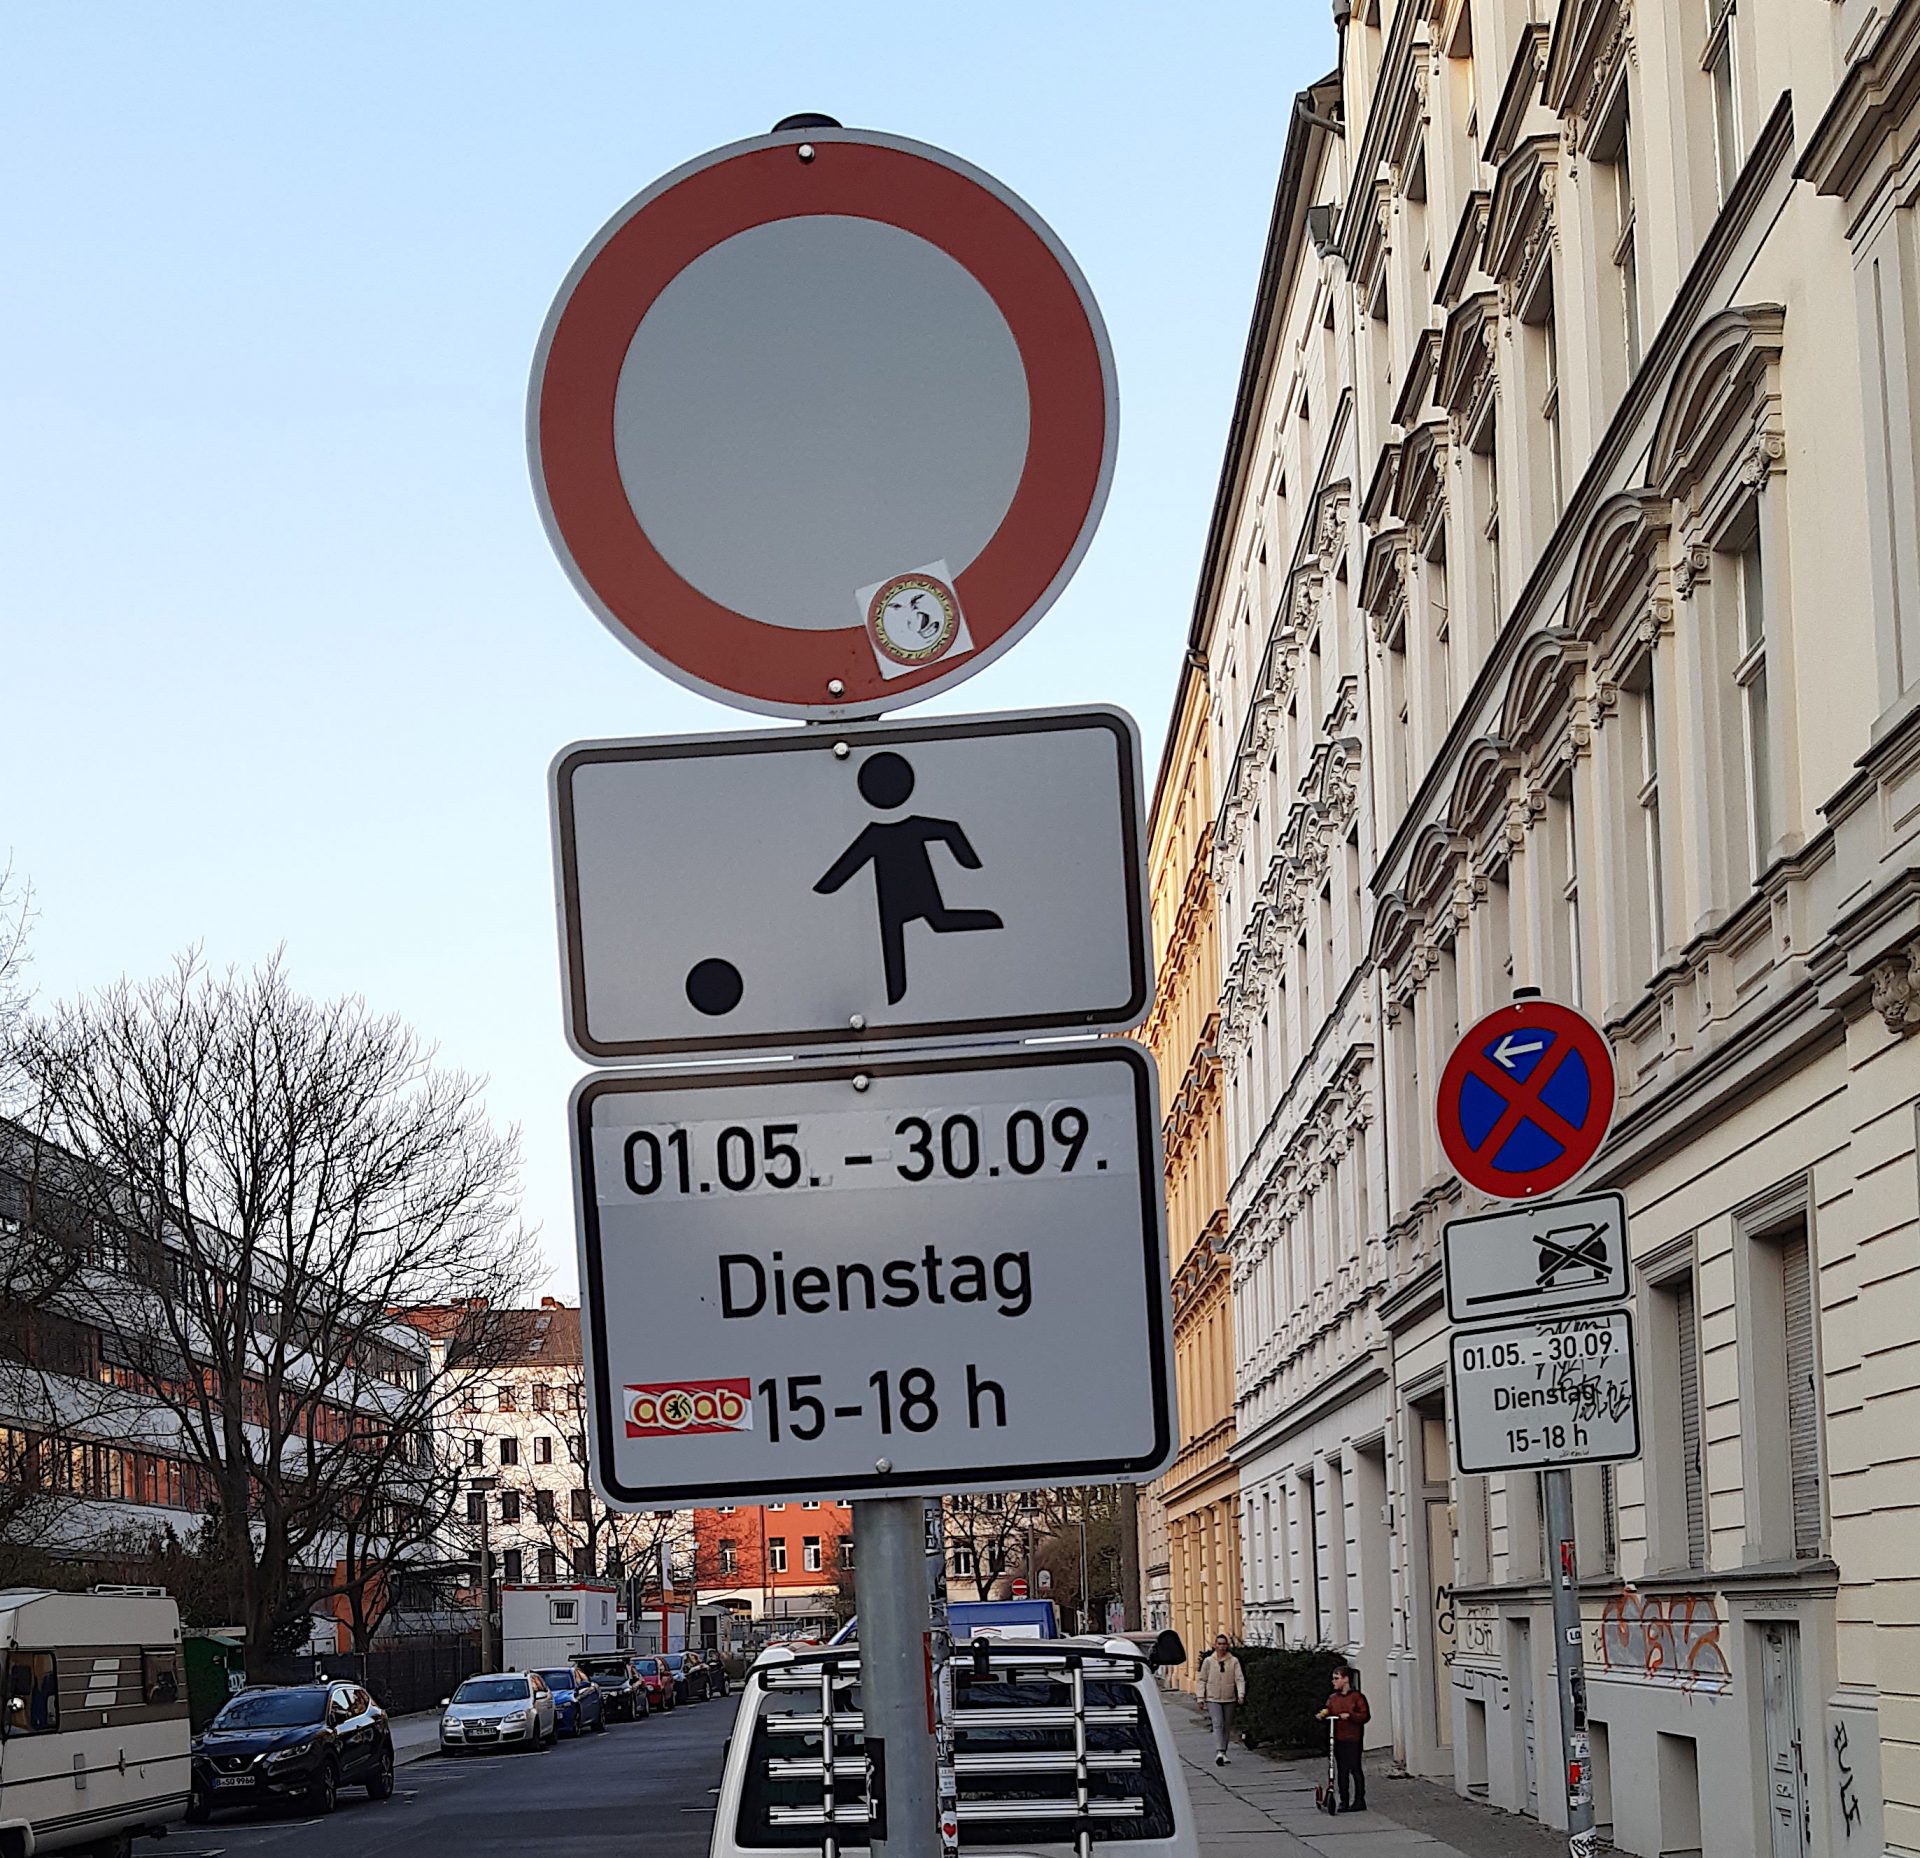 Verkehrsschild (Durchfahrt verboten), das die Zeiten für die Spielstraße anzeigt: 1.5. - 30.9. Dienstag, 15-18 Uhr.